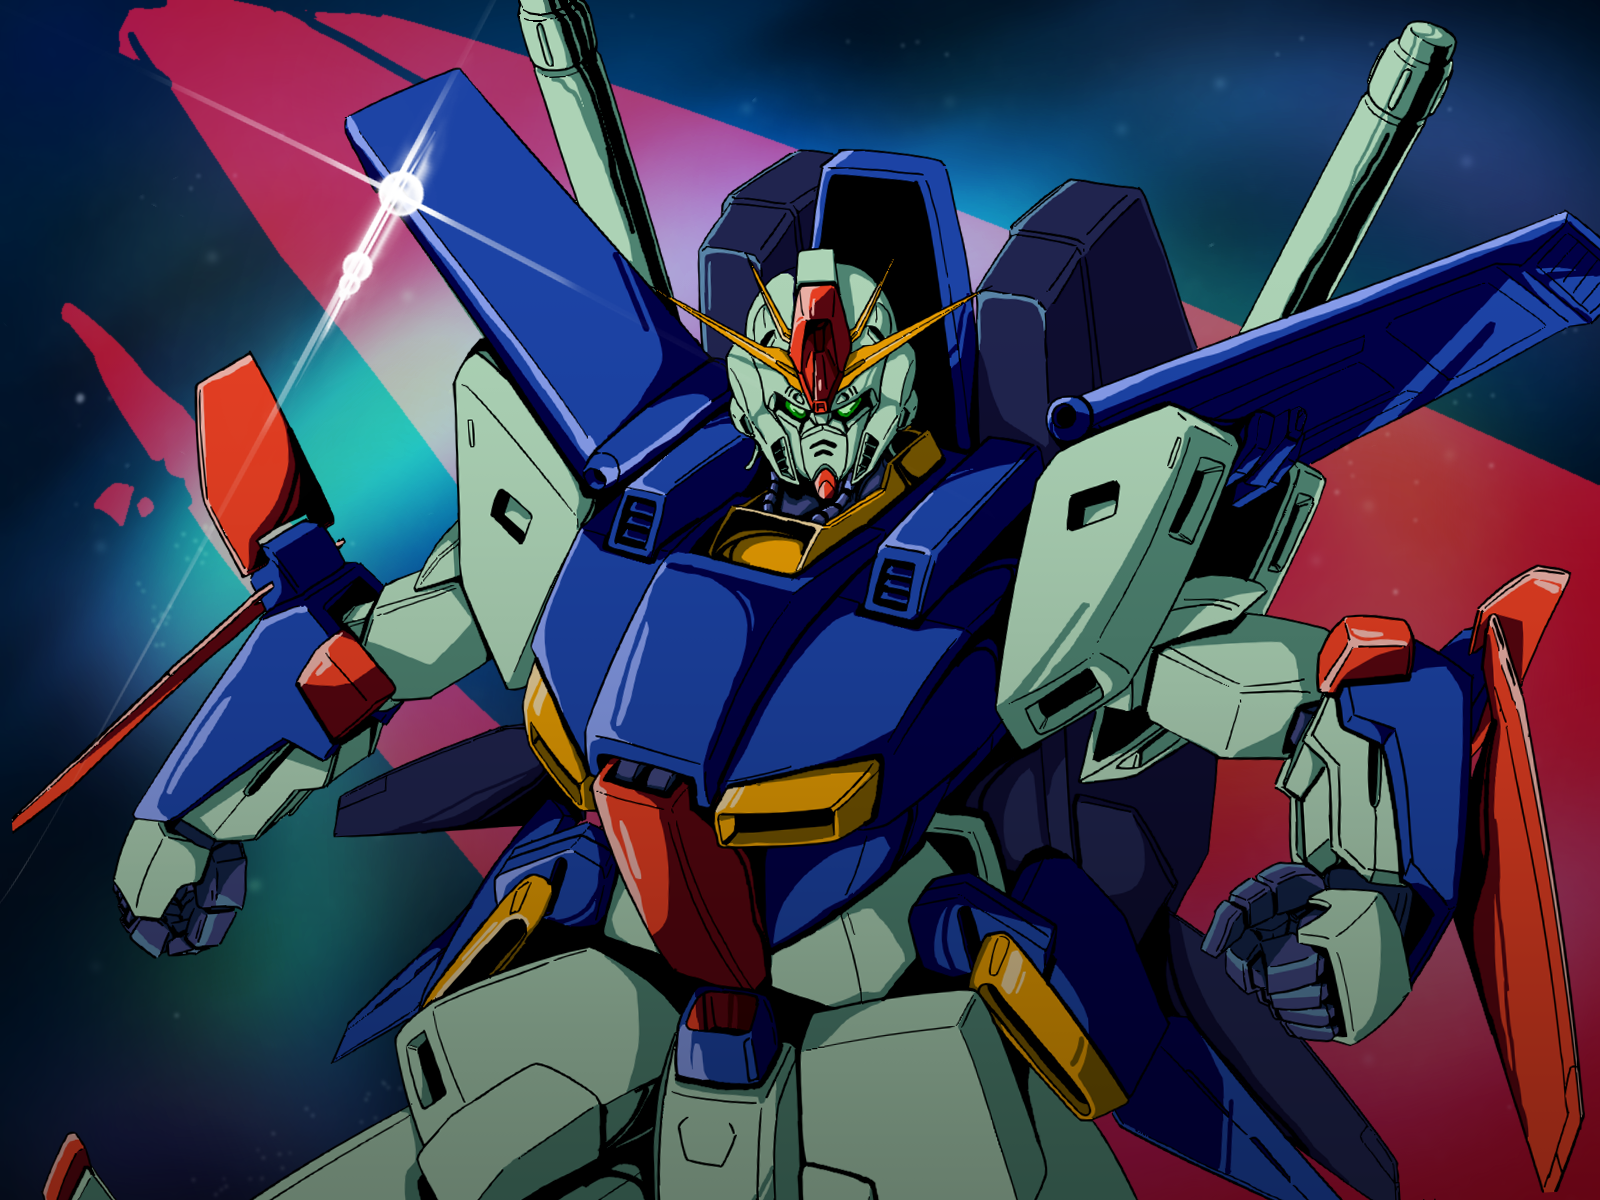 Anime Mechs Super Robot Wars Mobile Suit Gundam ZZ ZZ Gundam Gundam Artwork Digital Art Fan Art 1600x1200